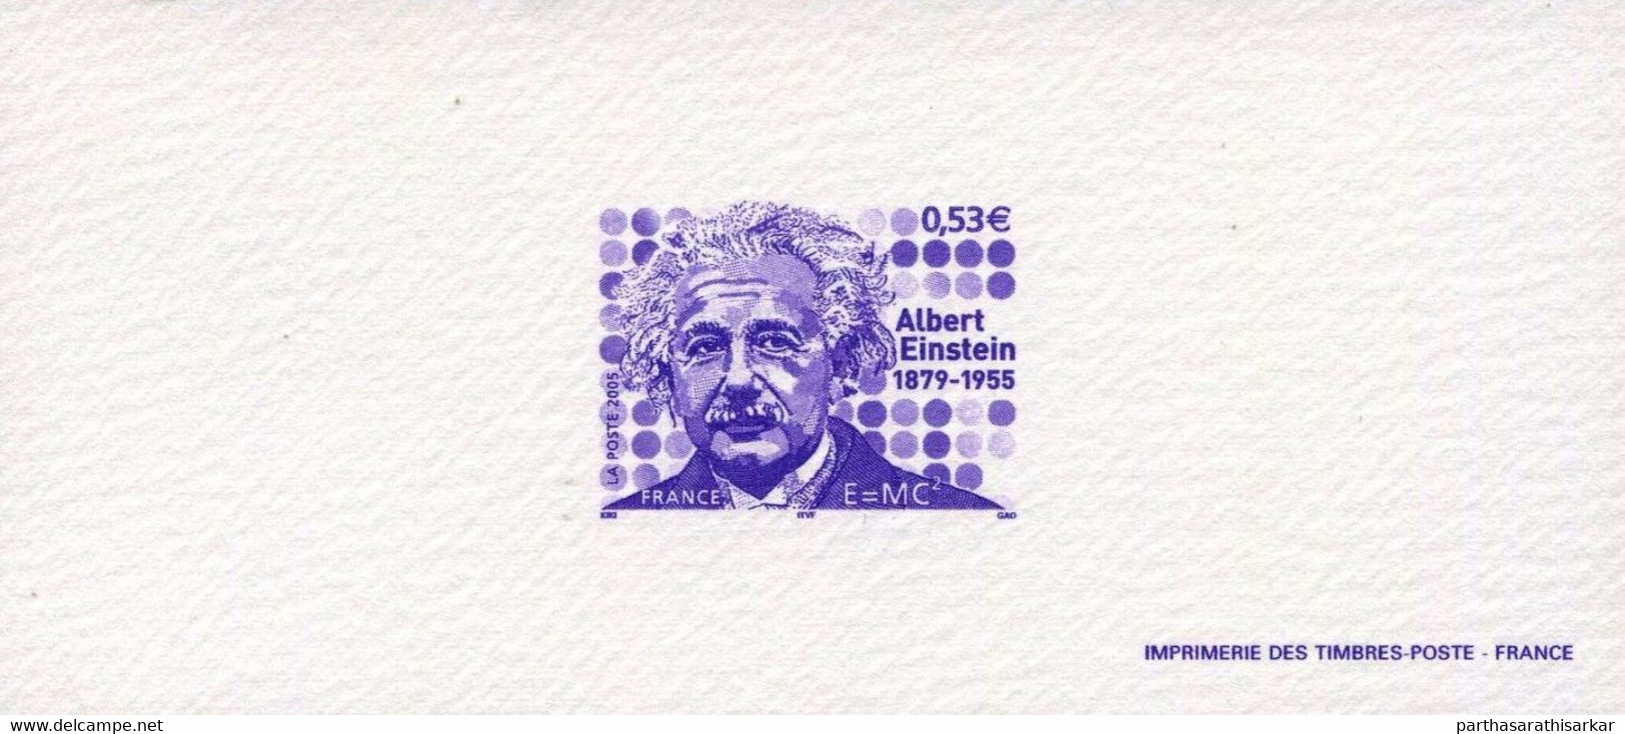 FRANCE 2005 50TH DEATH ANNIVERSARY OF ALBERT EINSTEIN 1879-1955 DIE CARD PROOF MNH - Albert Einstein